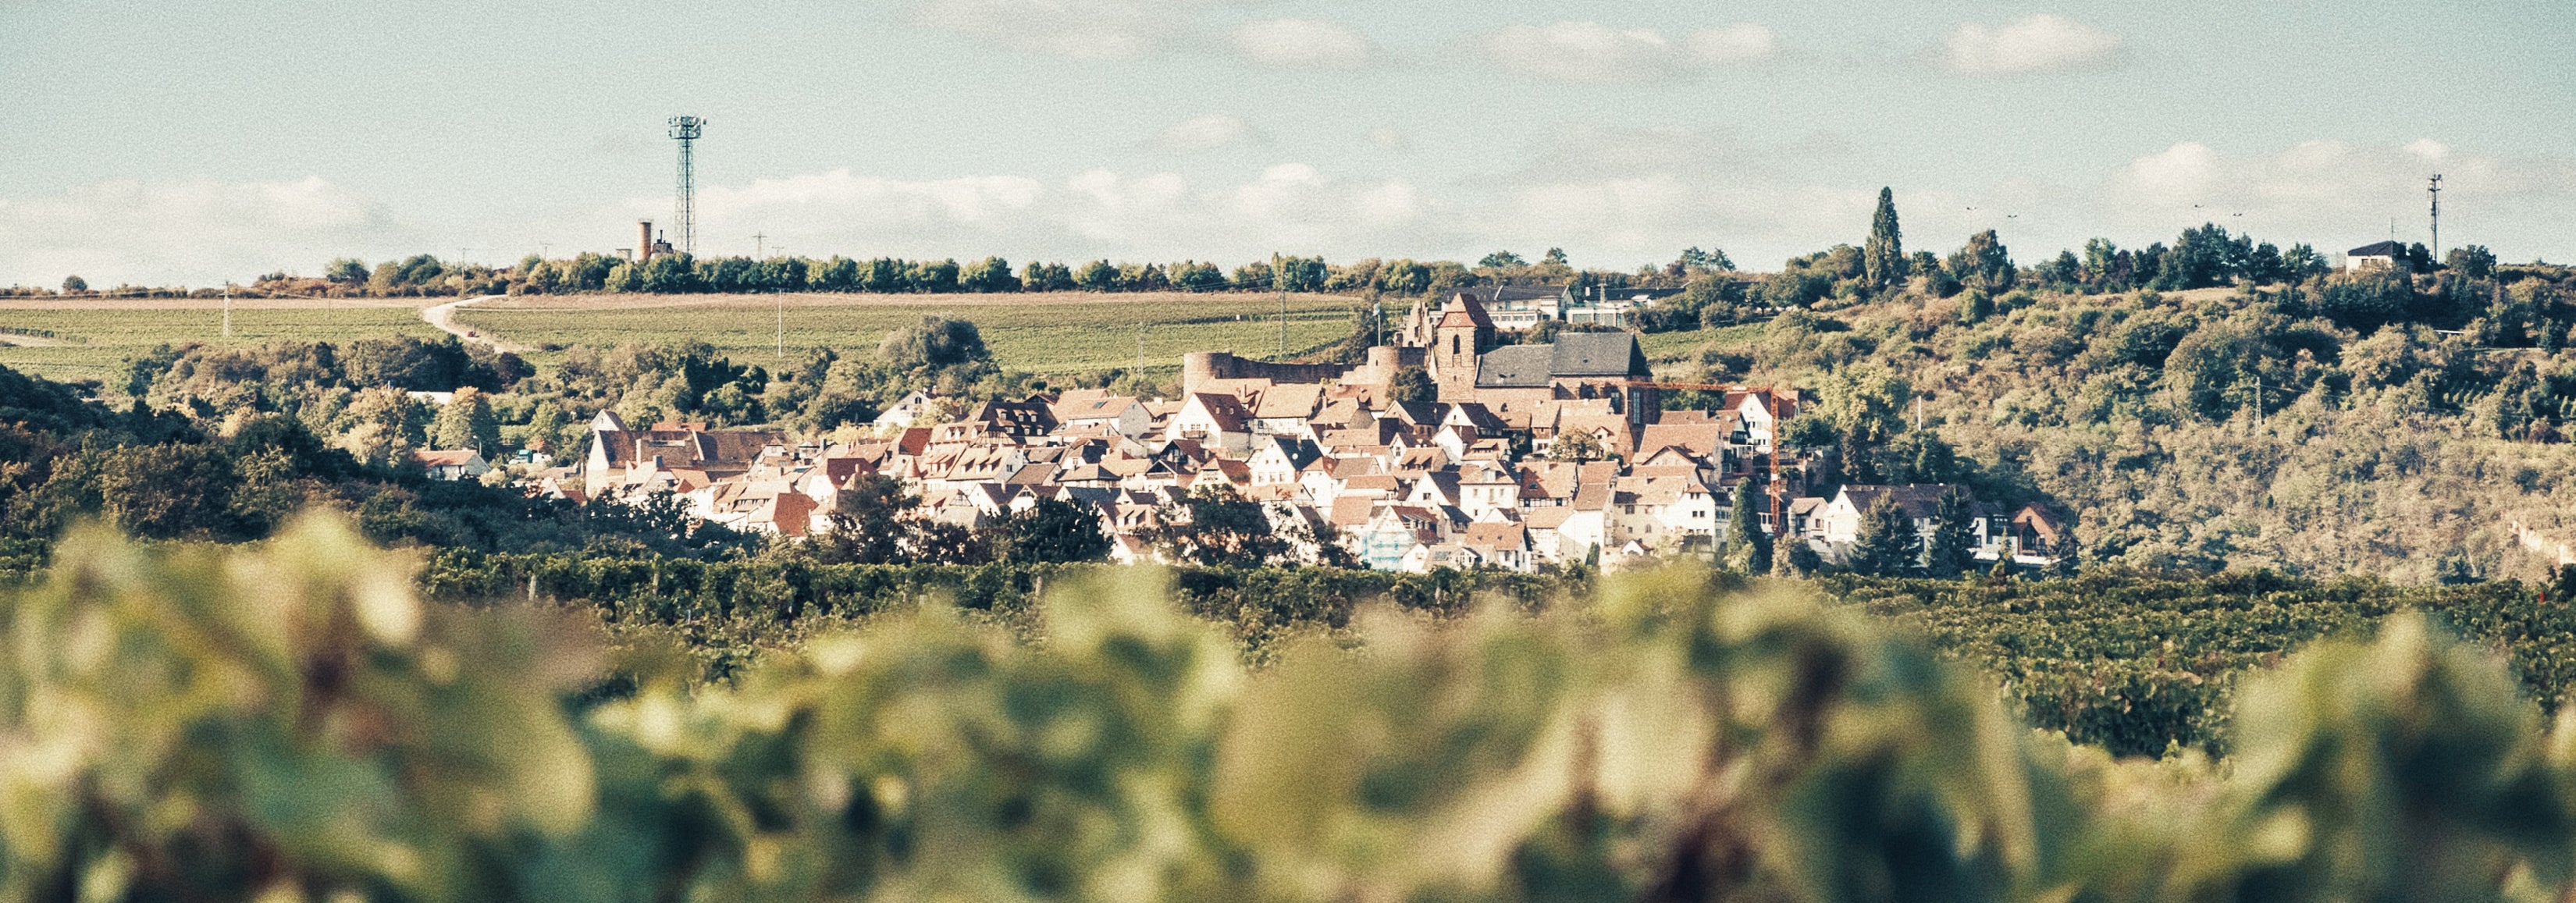 Pfalz | Germany's Famous Wine Region 